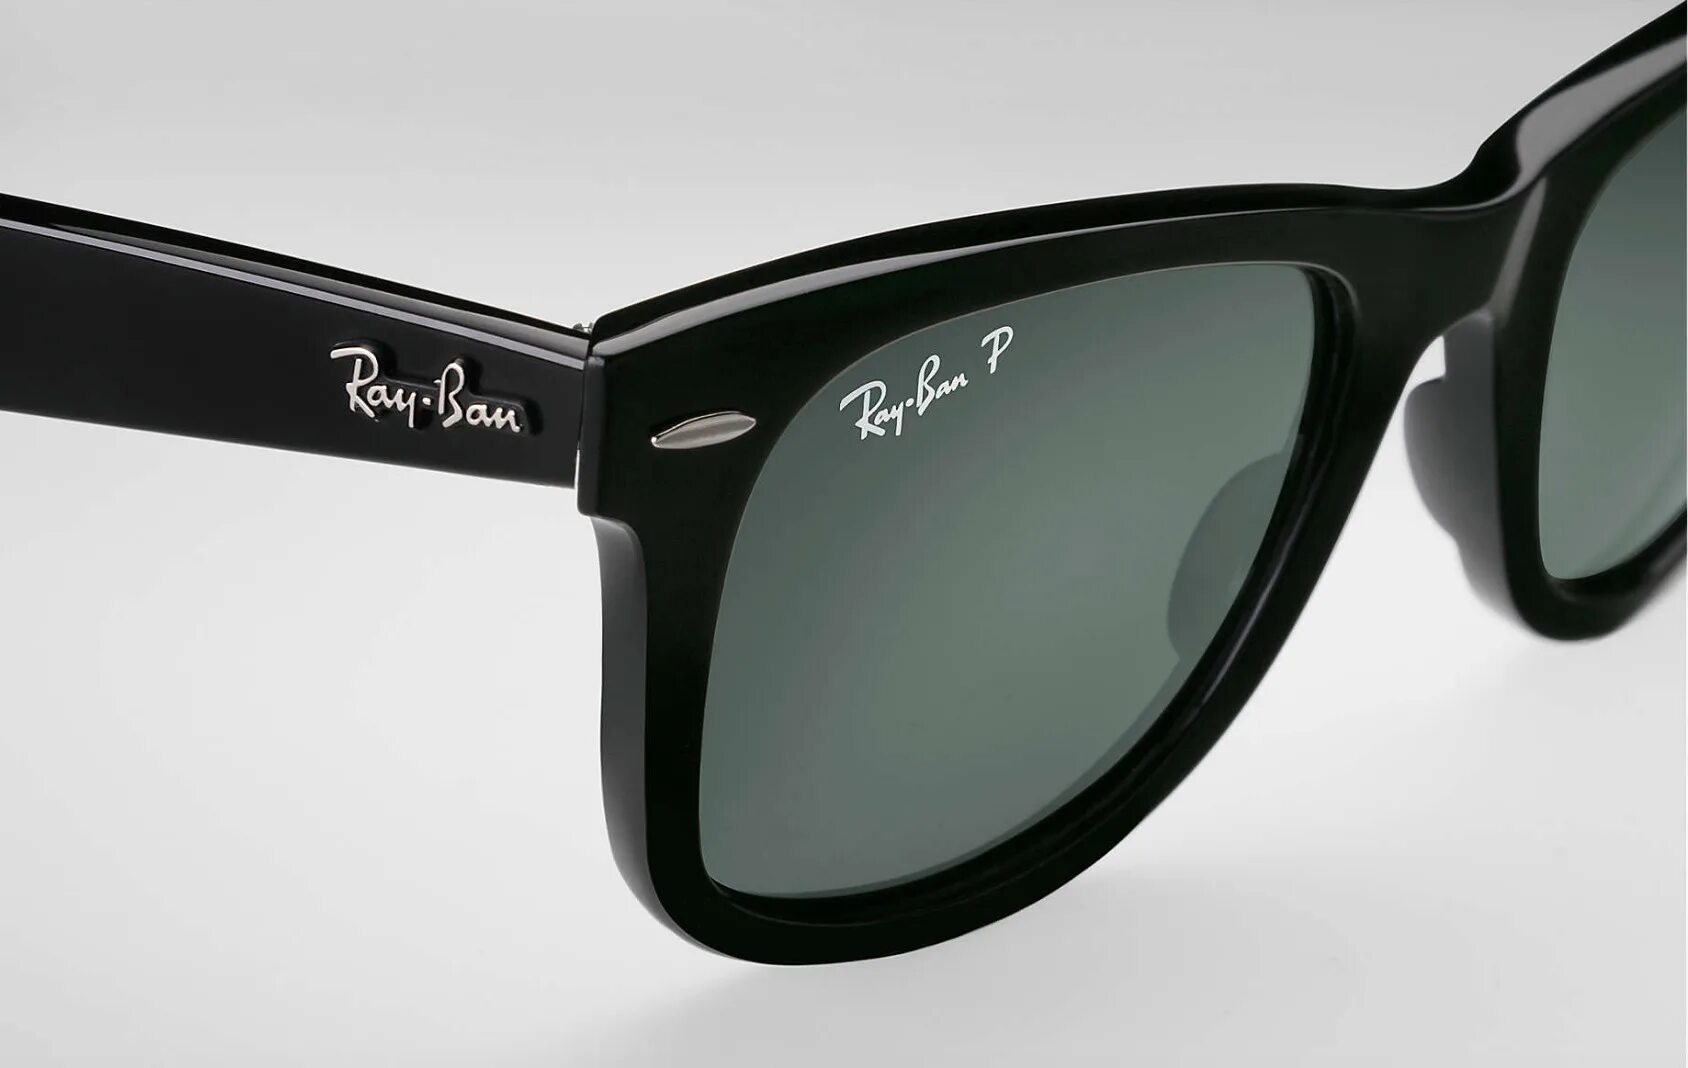 Ray ban rb5449. Очки ray ban Wayfarer. Ray ban очки rb3561. Ray-ban солнцезащитные очки rb4306. Проверить ray ban